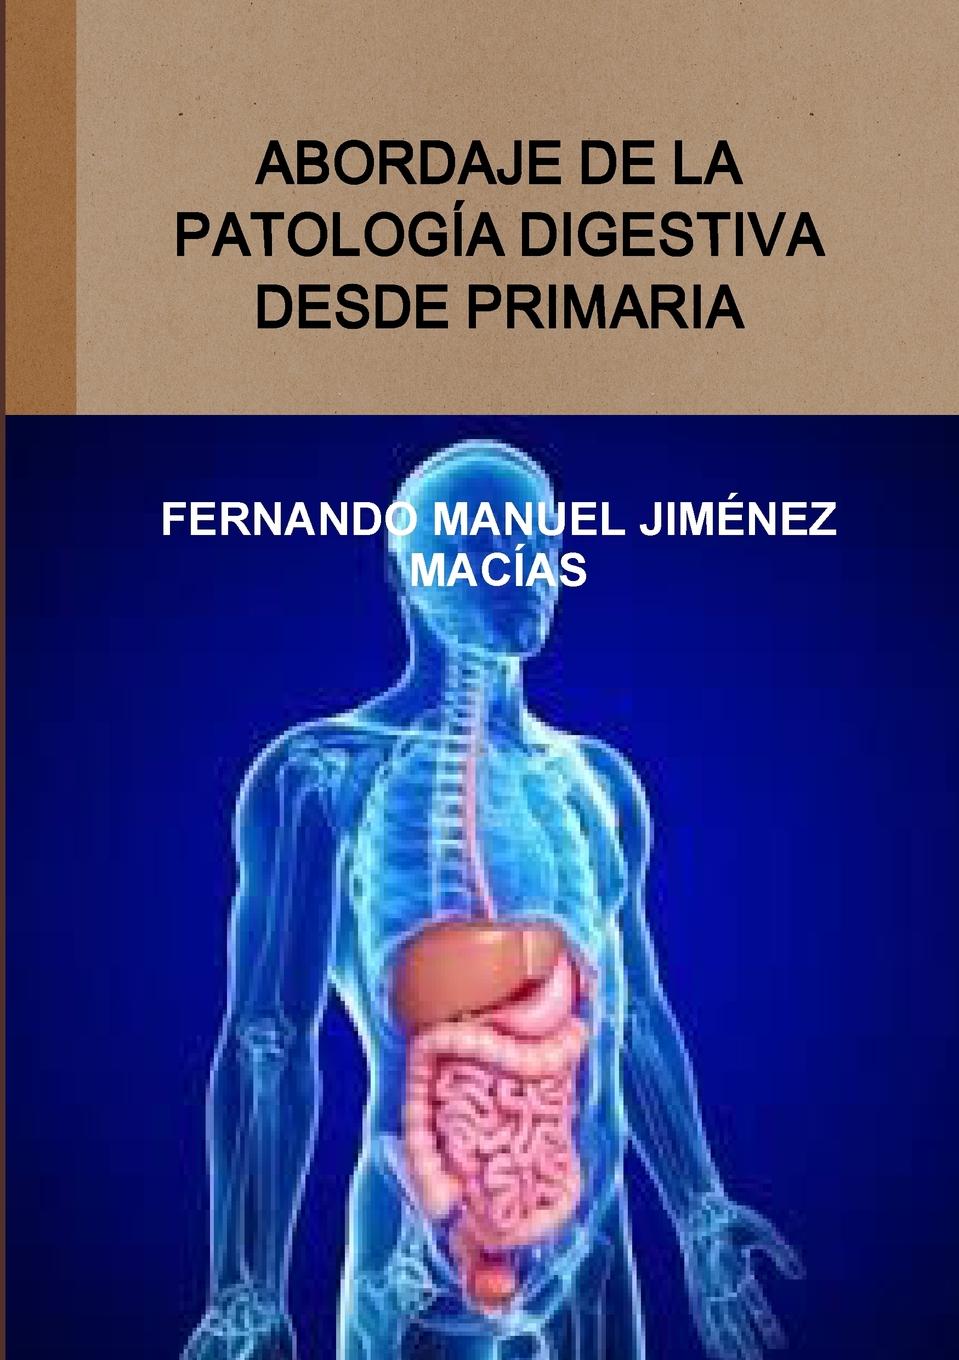 FERNANDO MANUEL JIMÉNEZ MACÍAS Abordaje de la patolog.a digestiva desde primaria